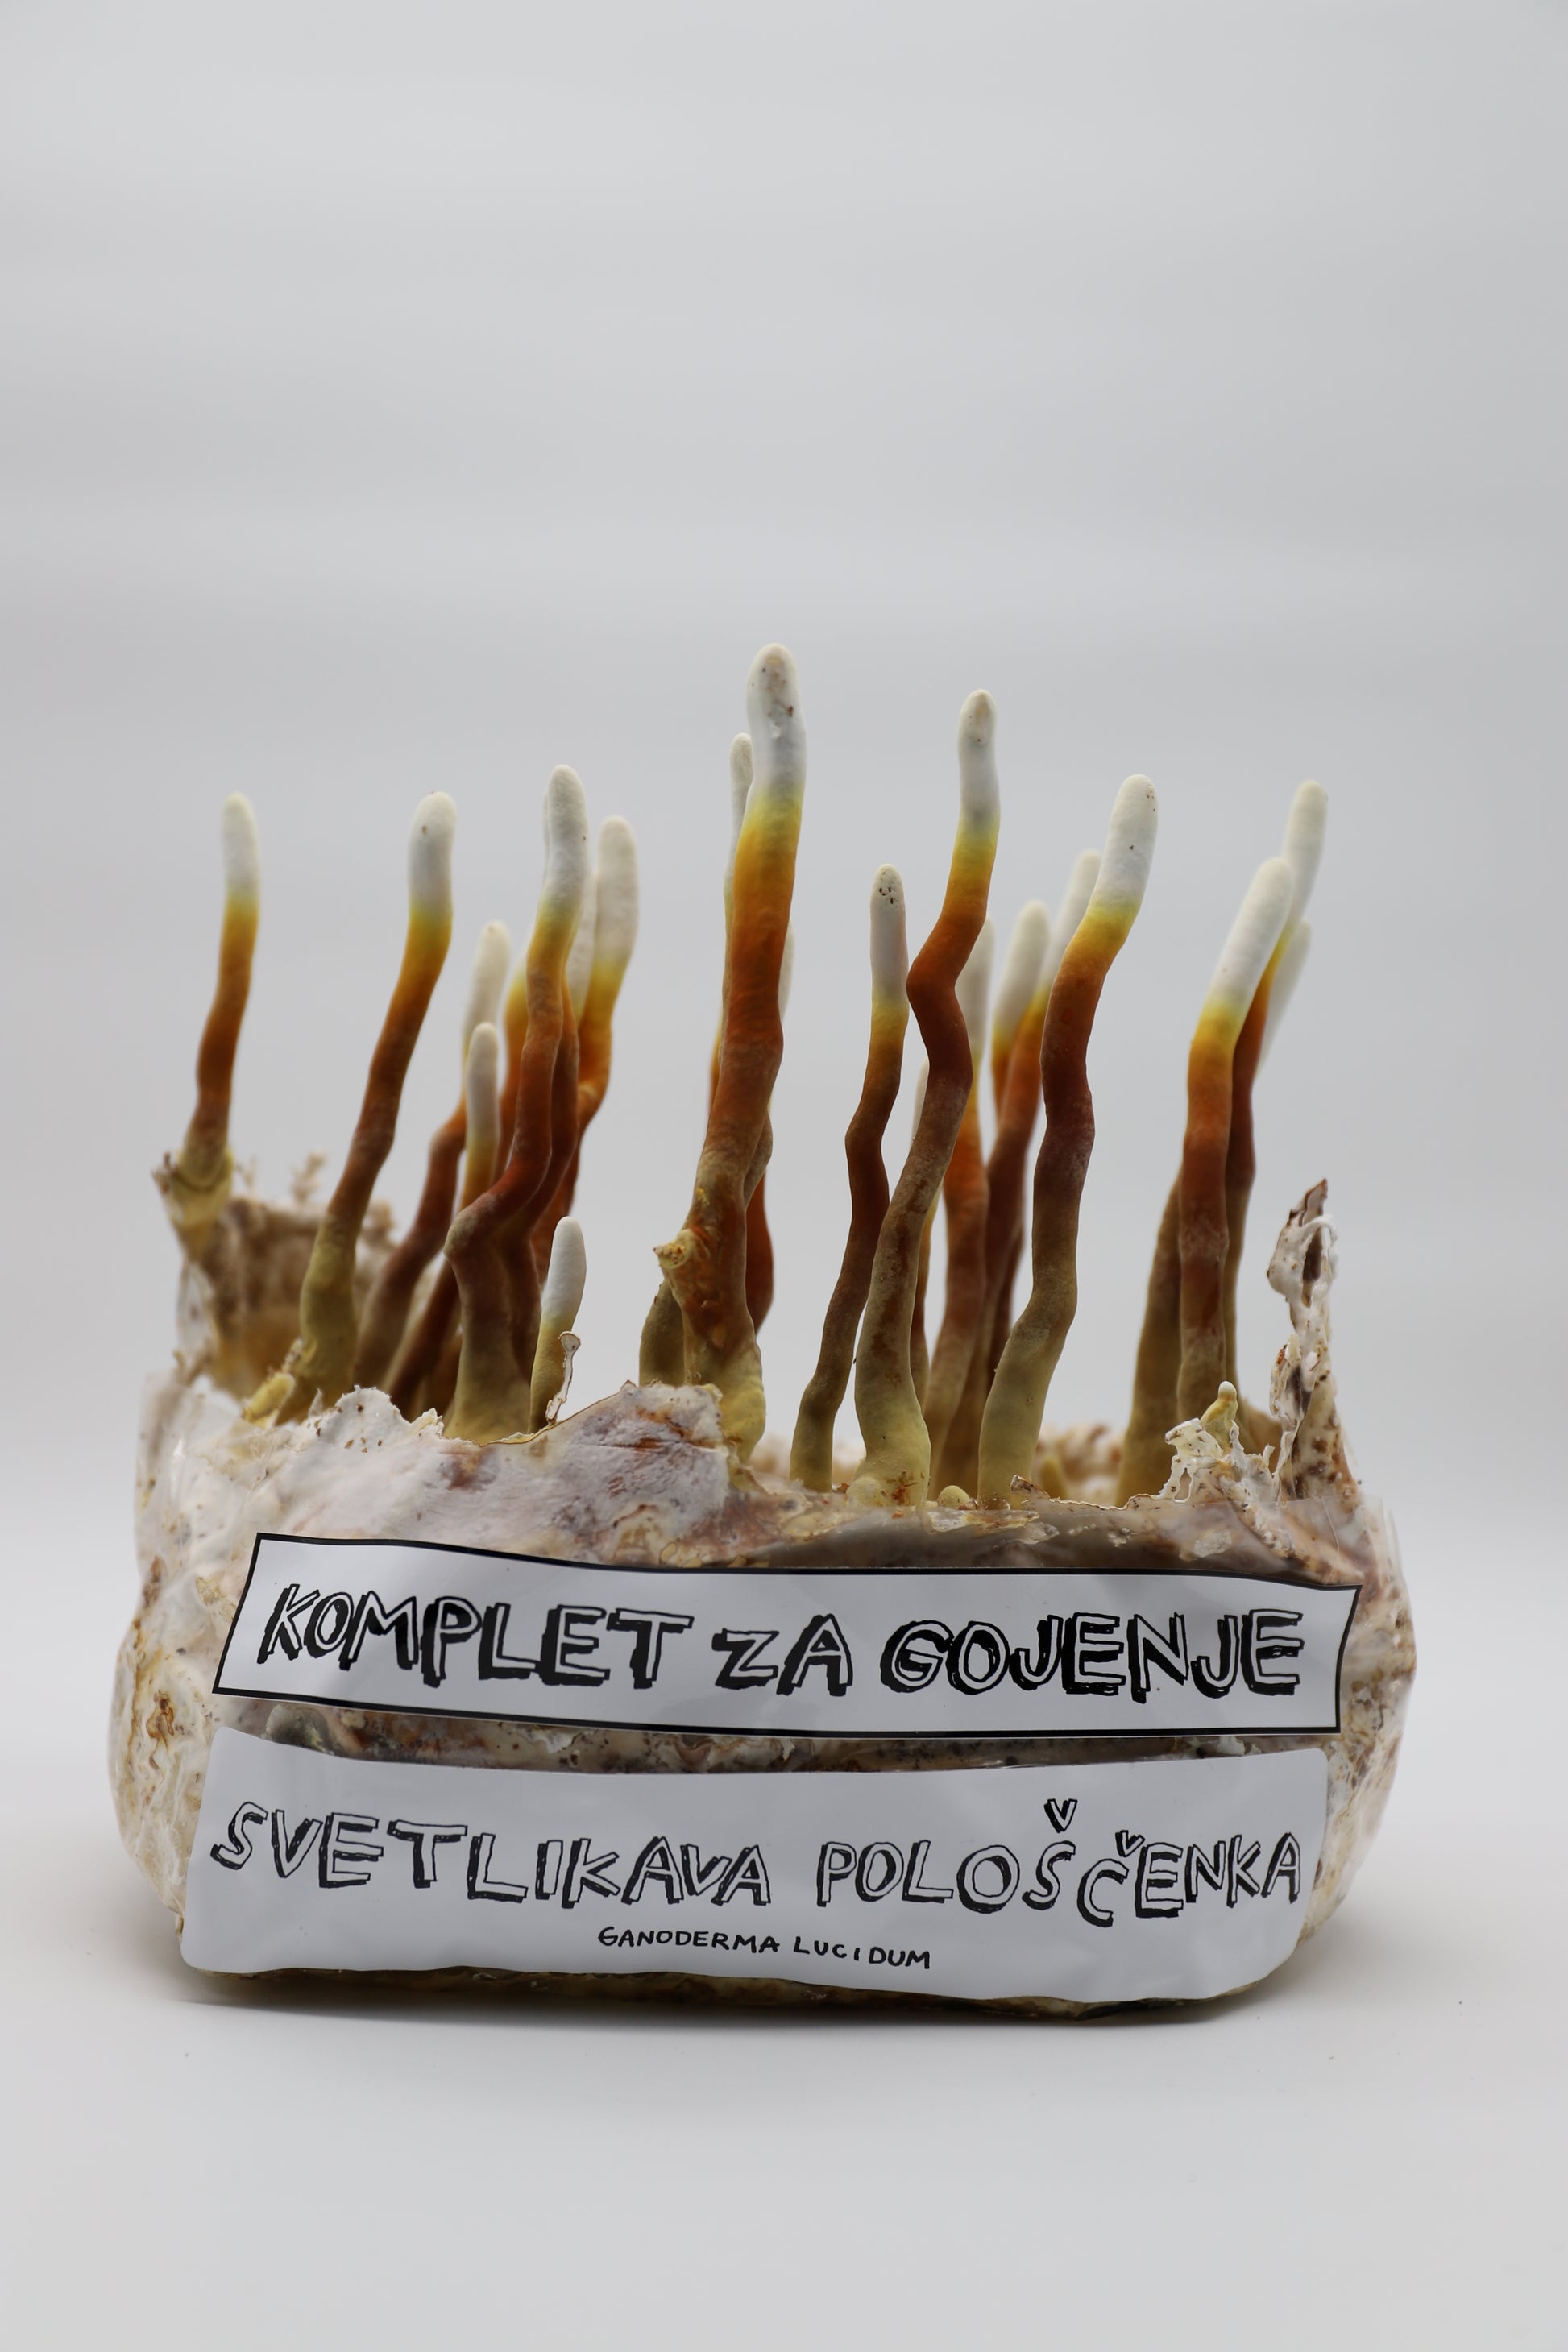 Komplet za gojenje - Reishi - svetlikava pološčenka - ganoderma lucidum - Gobnjak